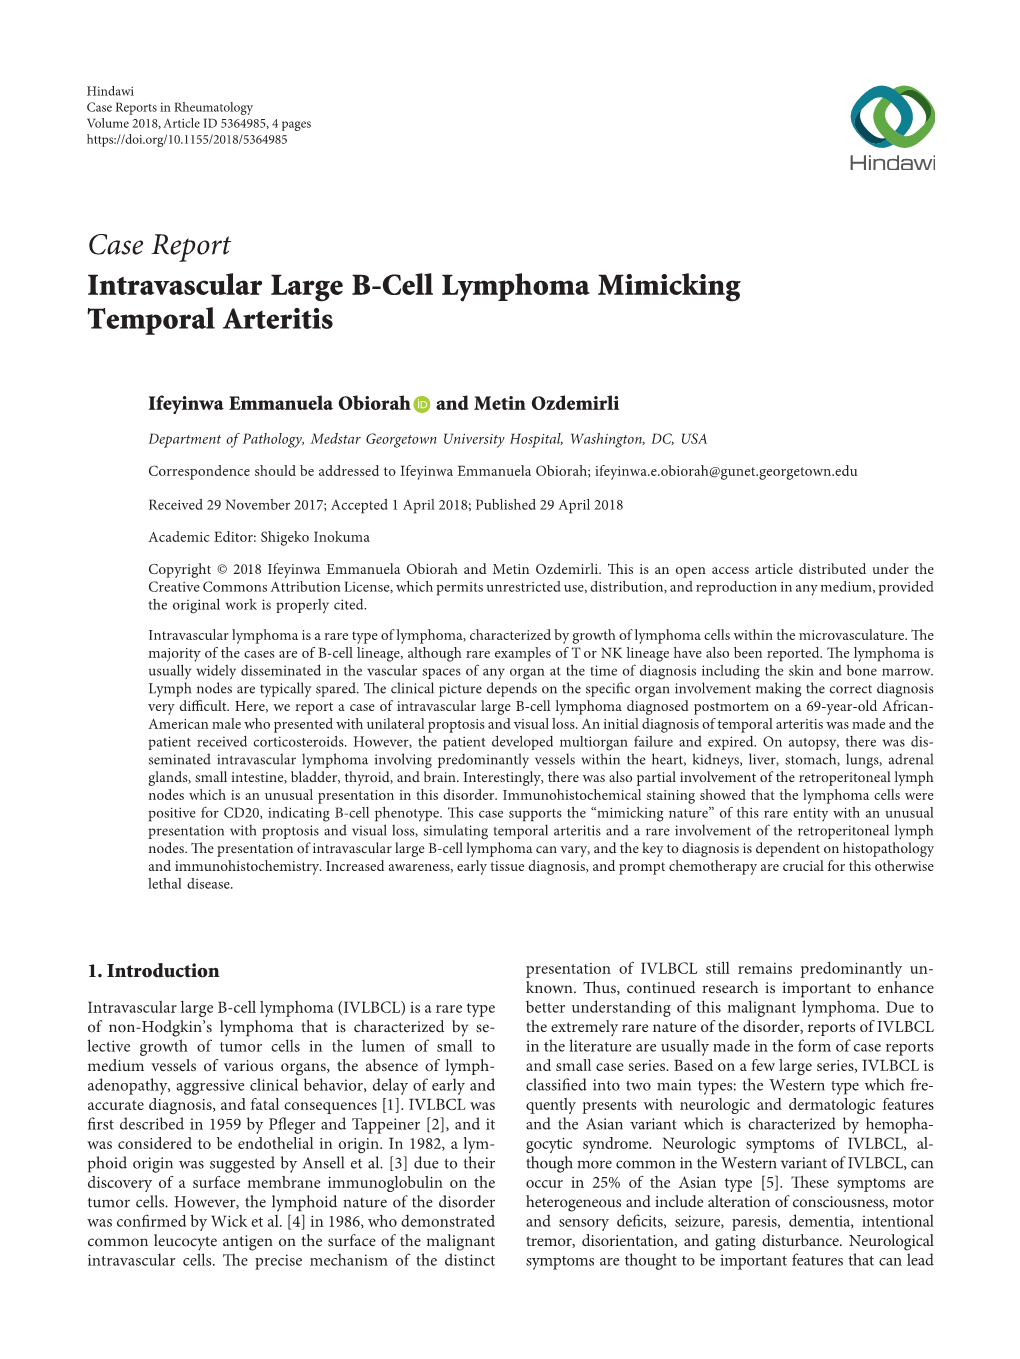 Intravascular Large B-Cell Lymphoma Mimicking Temporal Arteritis